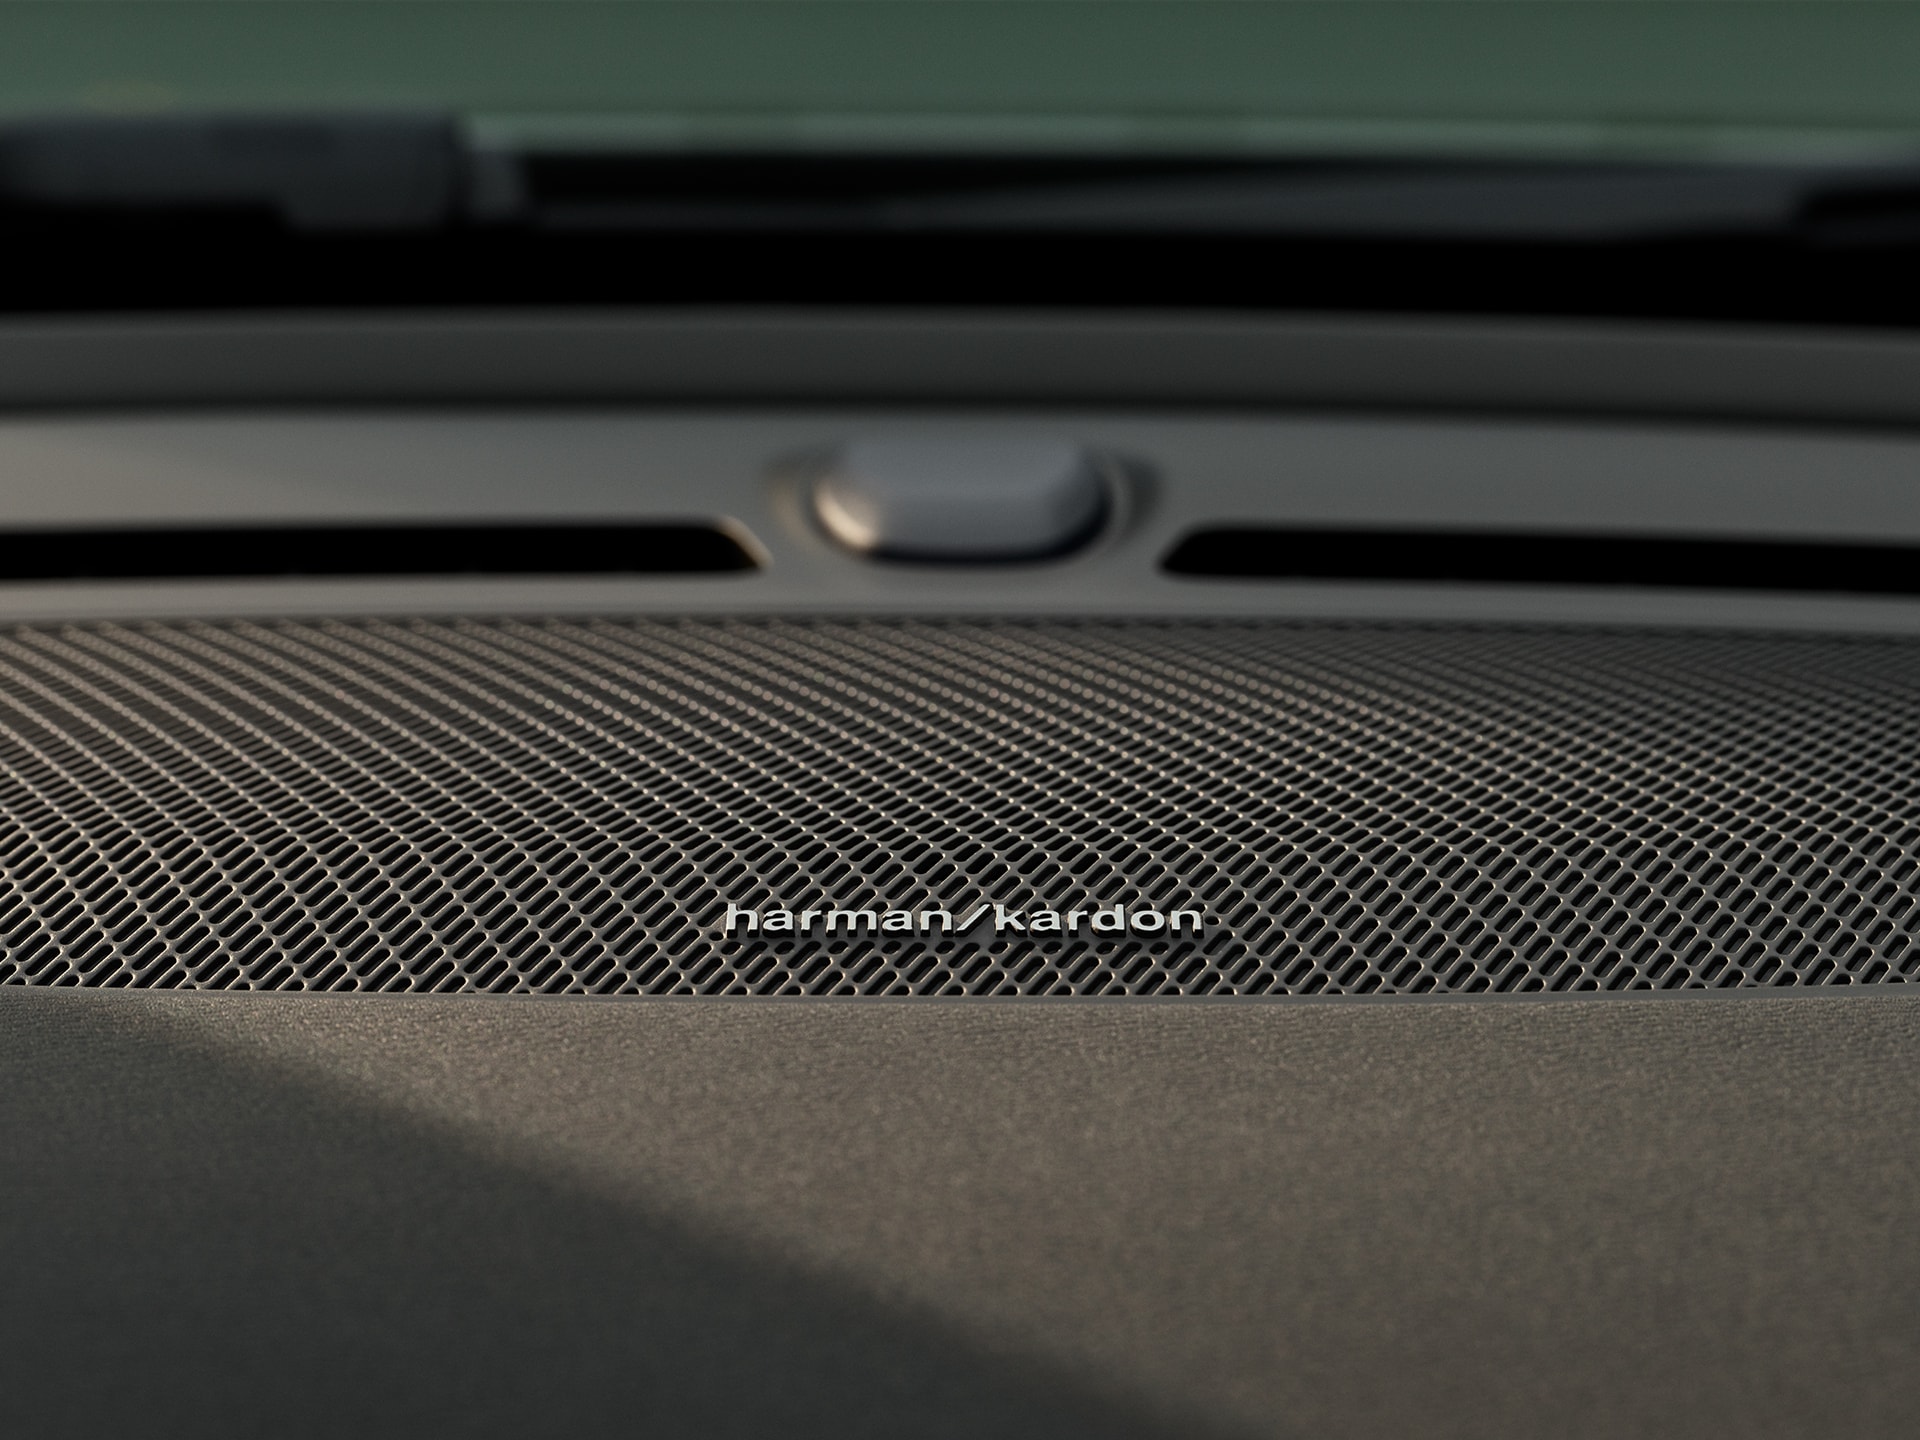 Detail image of Harman Kardon speaker in a Volvo XC40 Recharge door